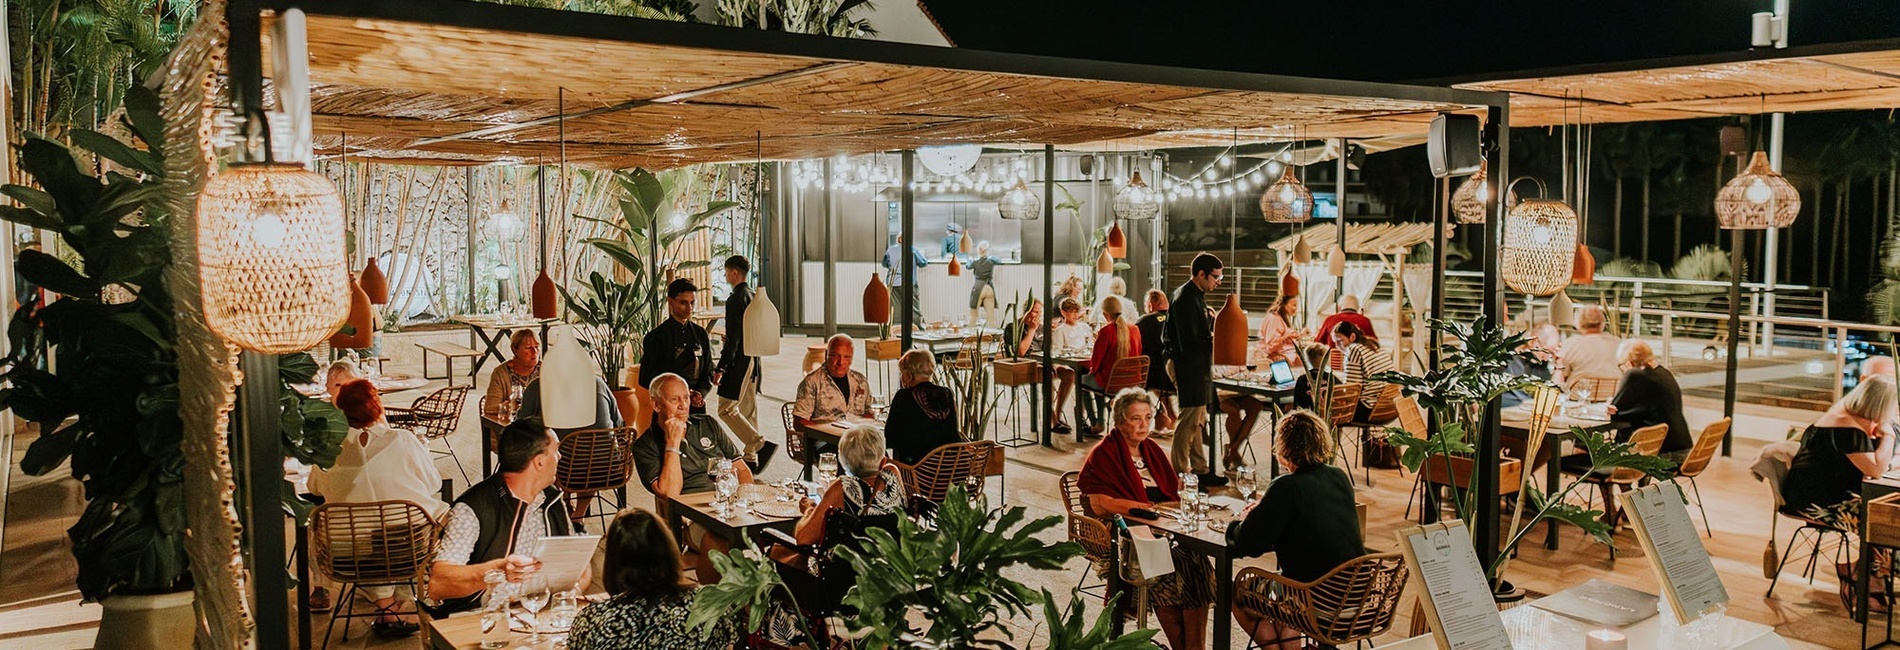 eine Gruppe von Menschen sitzt an Tischen in einem Restaurant